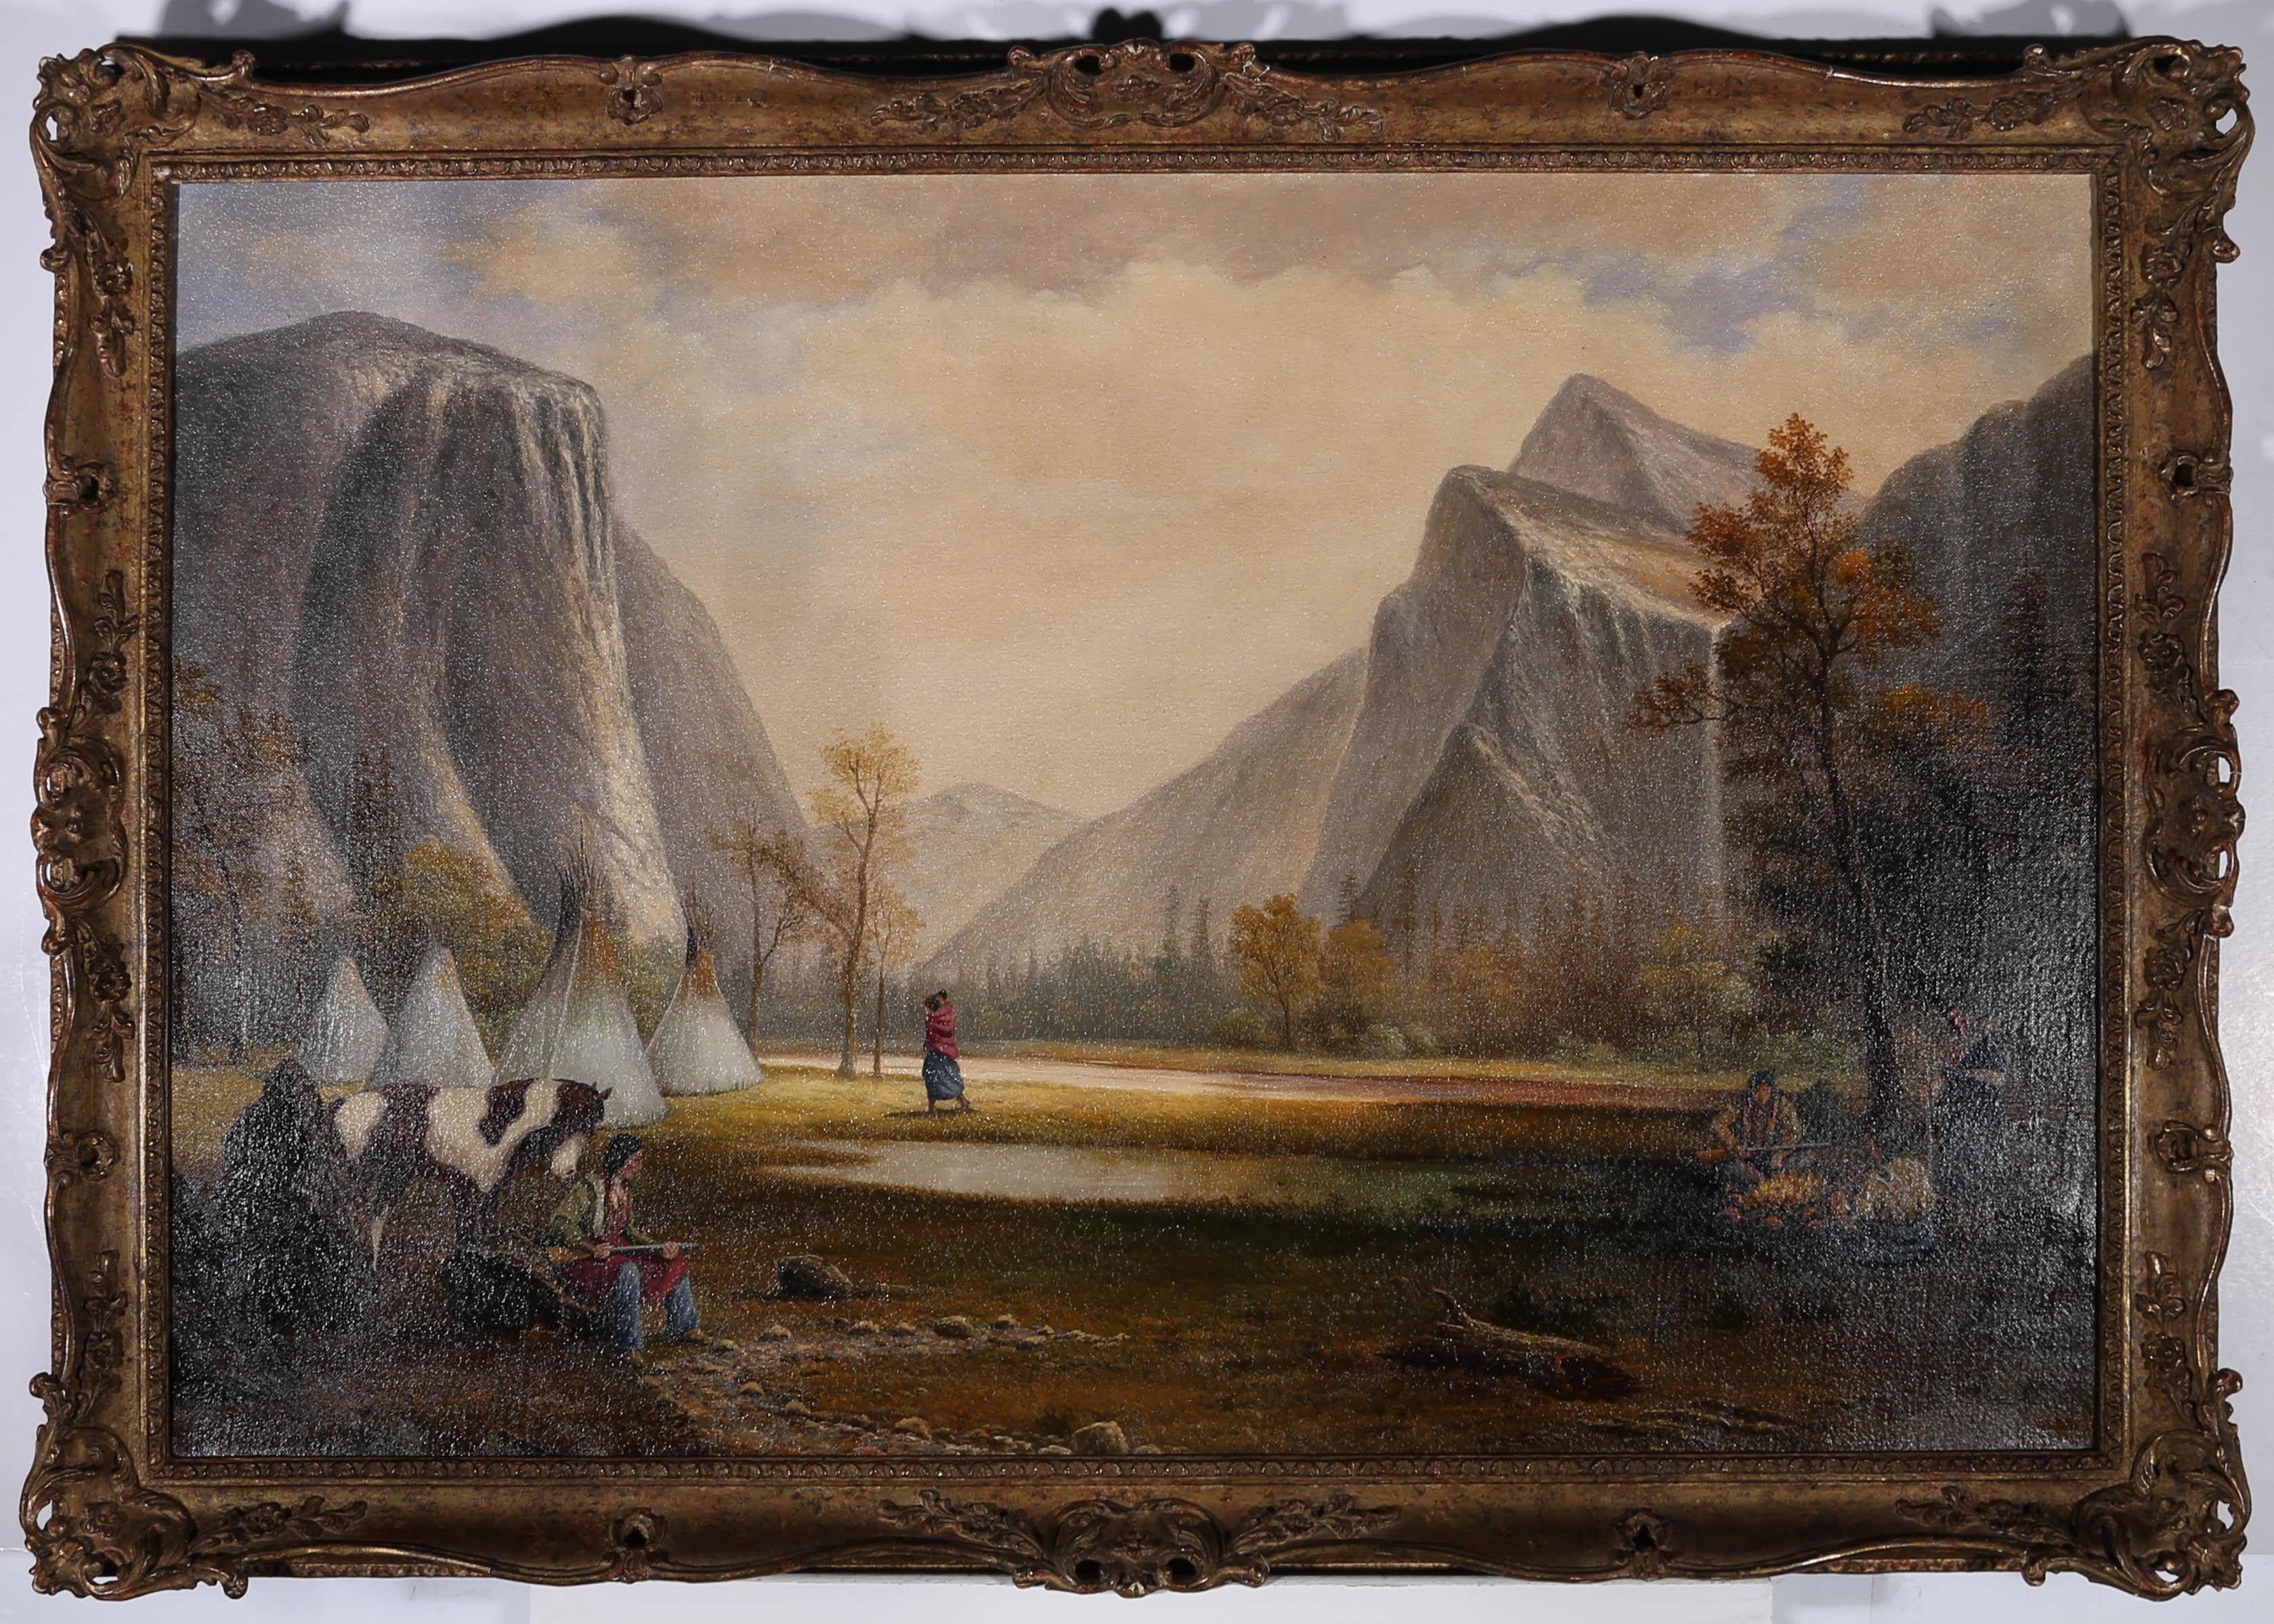 Un saisissant paysage à l'huile du XIXe siècle montrant l'impressionnante vallée de Yosemite avec une vue imposante d'El Capitan. Un groupe d'Indiens du Yosemite a installé son camp sur les plaines herbeuses de la vallée, avec des wigwams et un feu